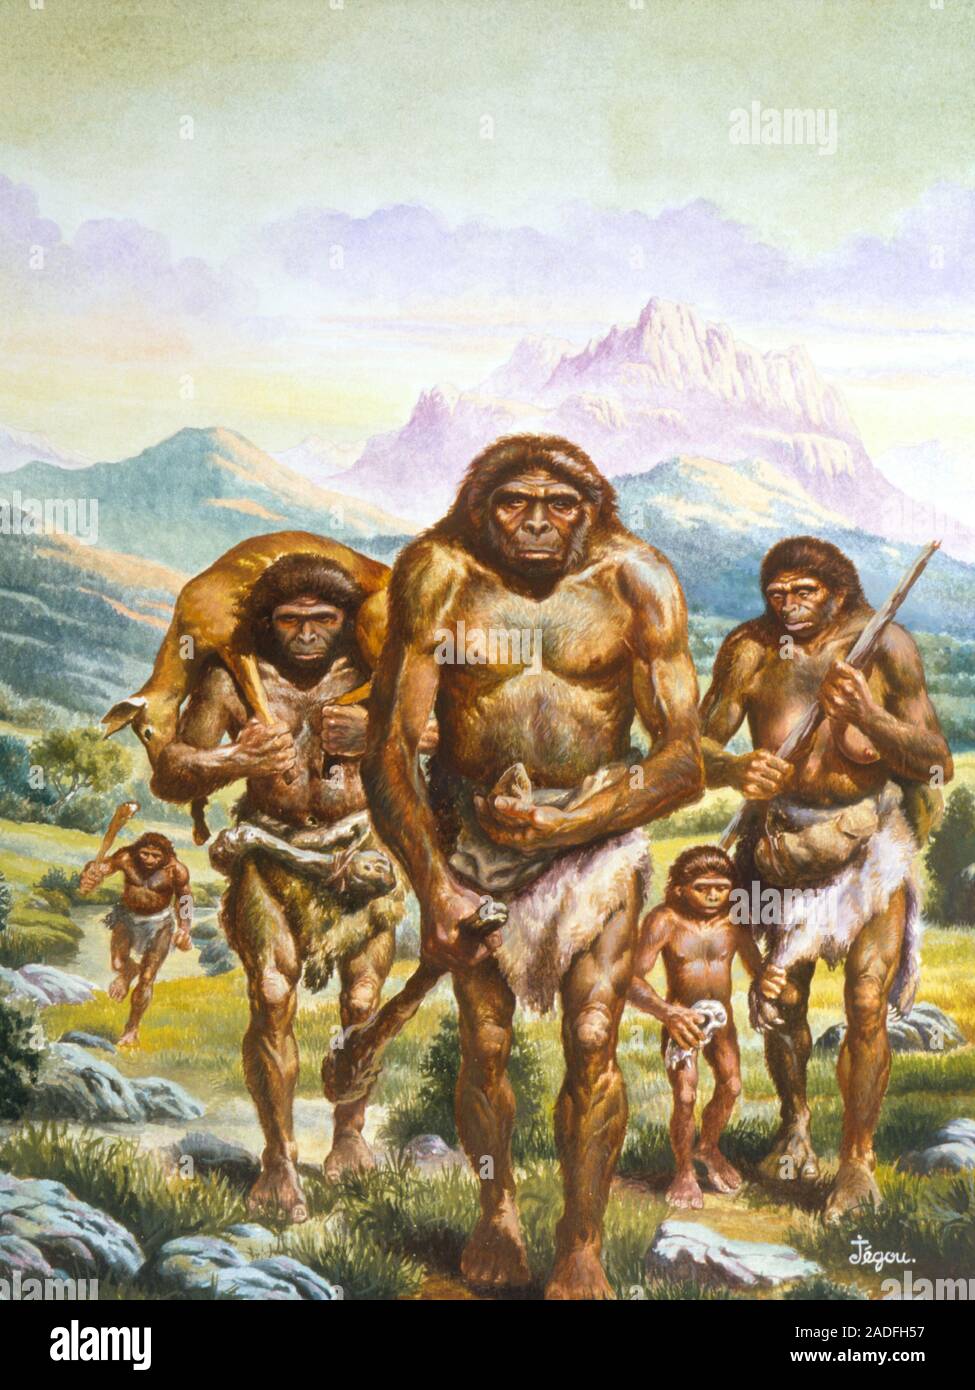 Древние люди егэ. Австралопитек неандерталец хомо сапиенс. Племя хомо сапиенс. Австралопитеки Зденека Буриана.